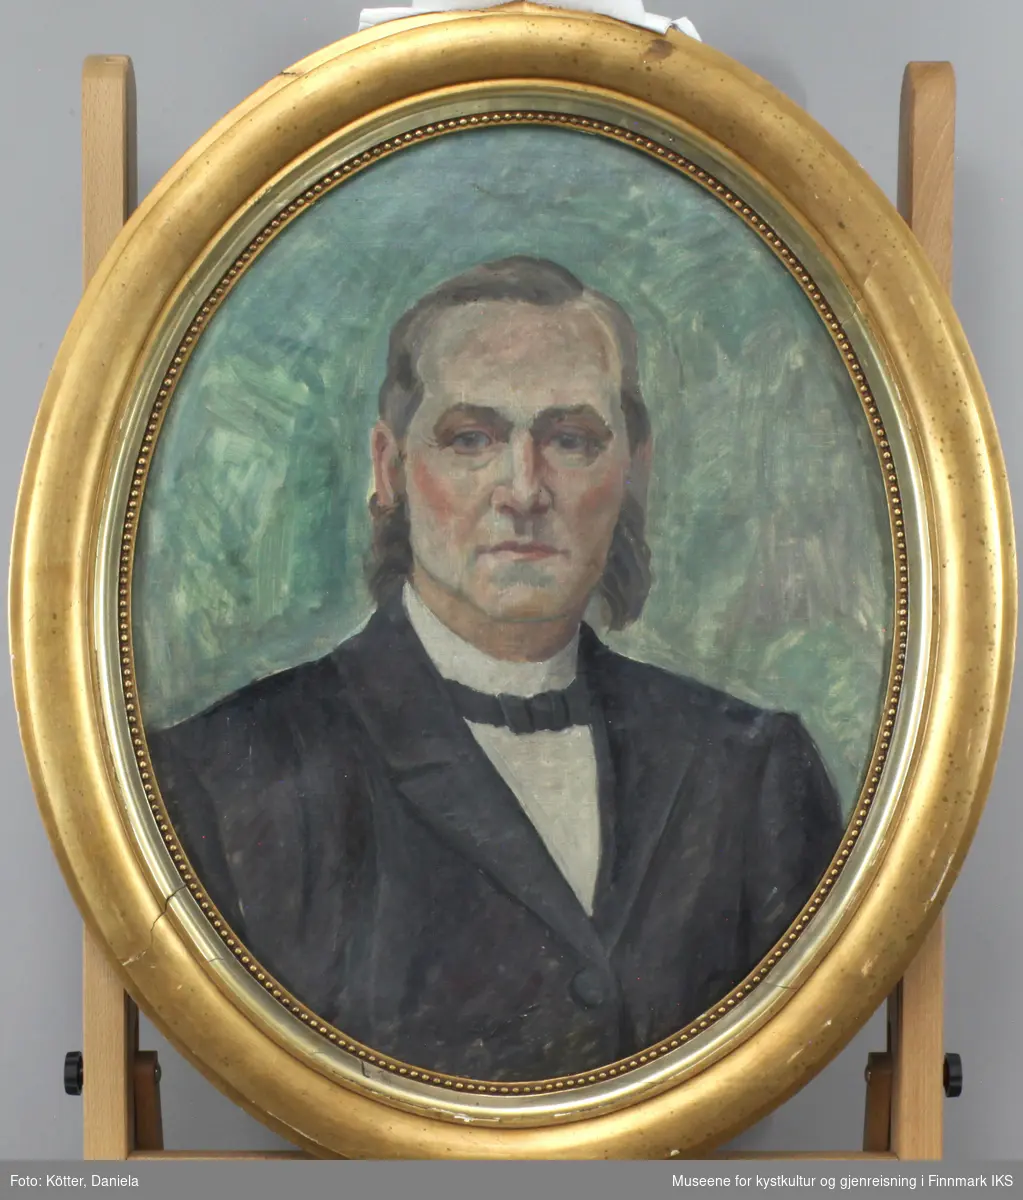 Mannen er portrettert ikledd mørk jakke og hvit skjorte med svart sløyfe. Han har et kinnskjegg, en sjeggfrisyre som var typisk på 1800-tallet. Bakgrunnen er utført i varierende blå-, grå- og grønnfarger.